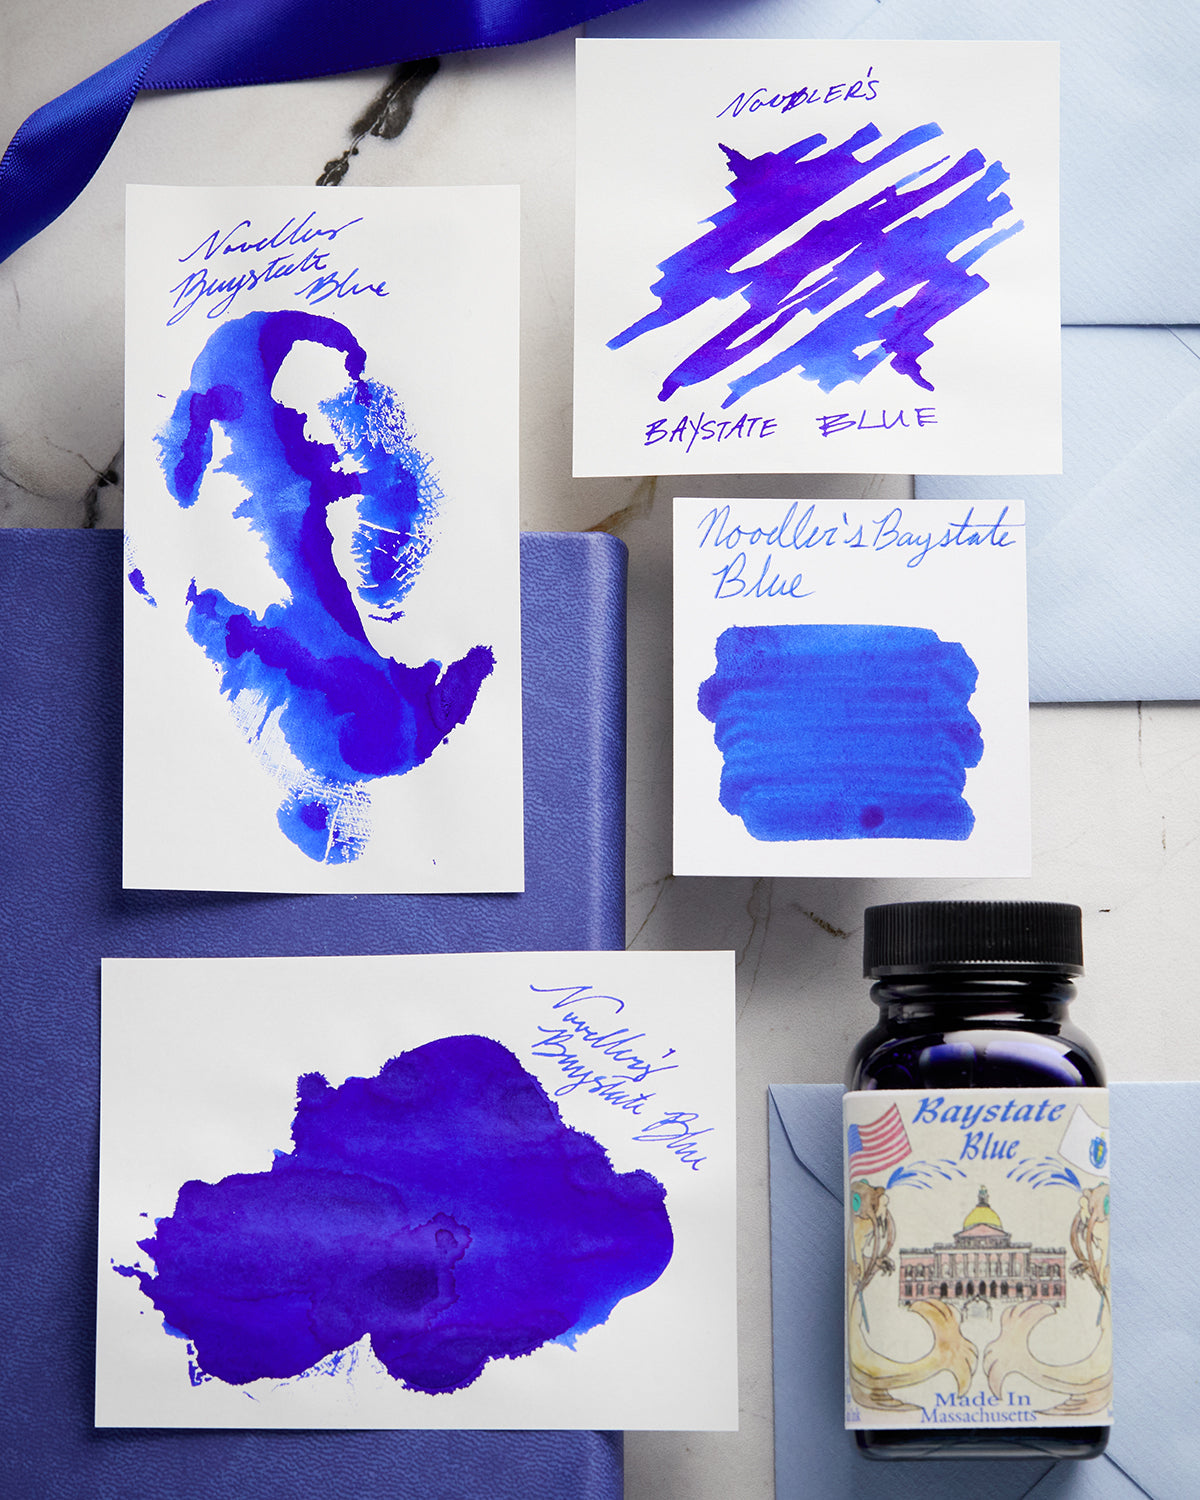 Noodler's Baystate Blue ink examples